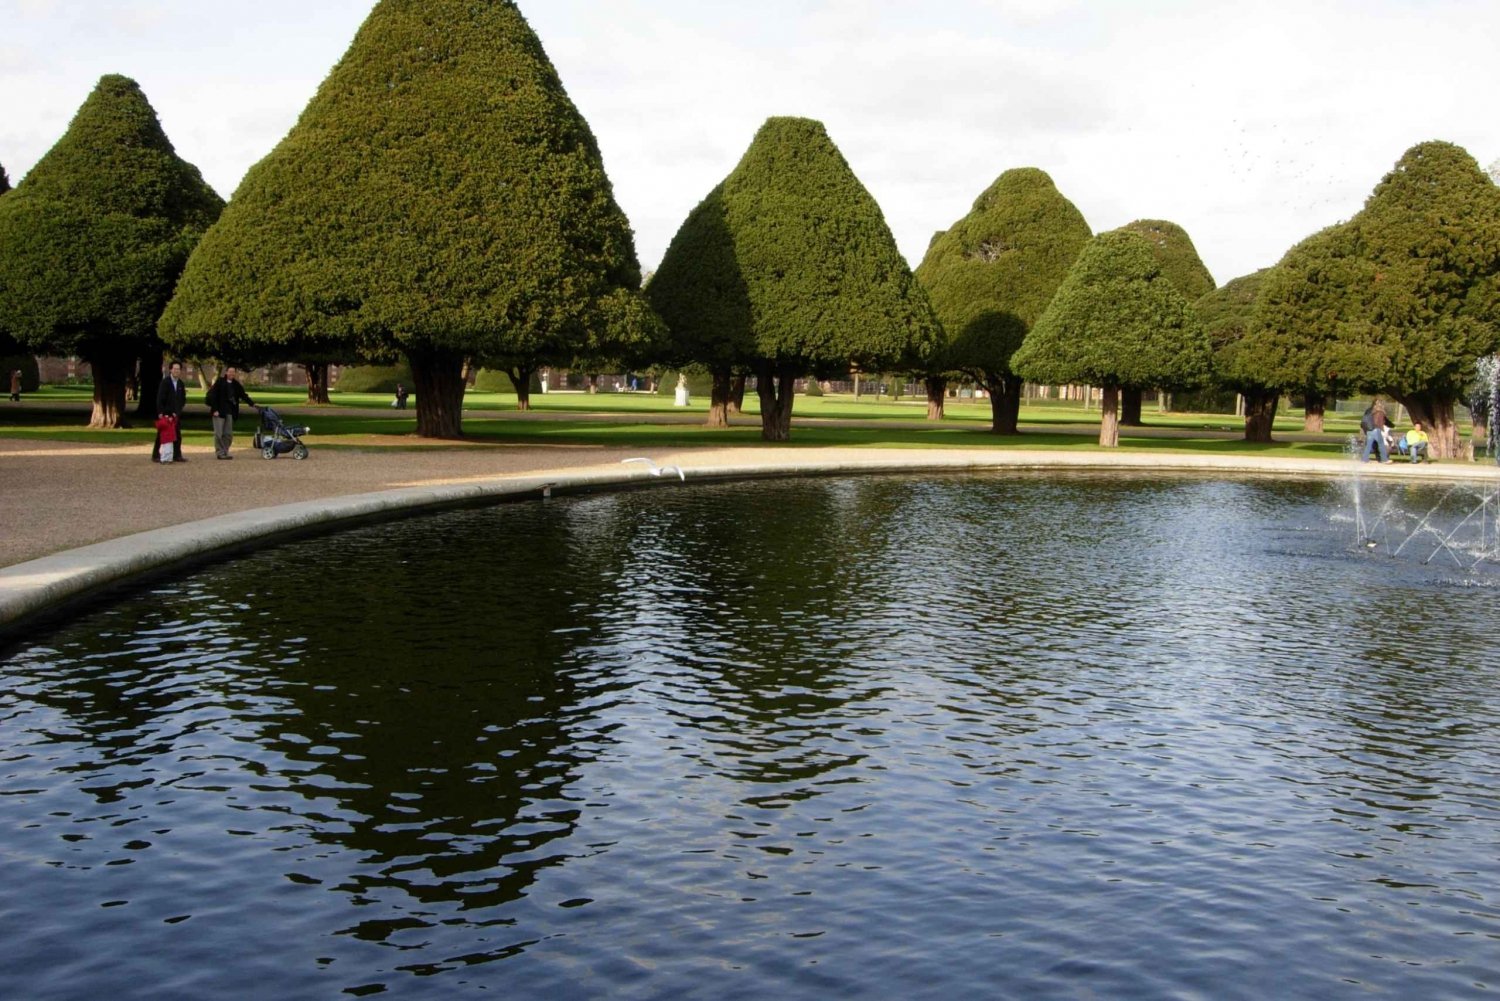 Londres: visita guiada privada a Hampton Court